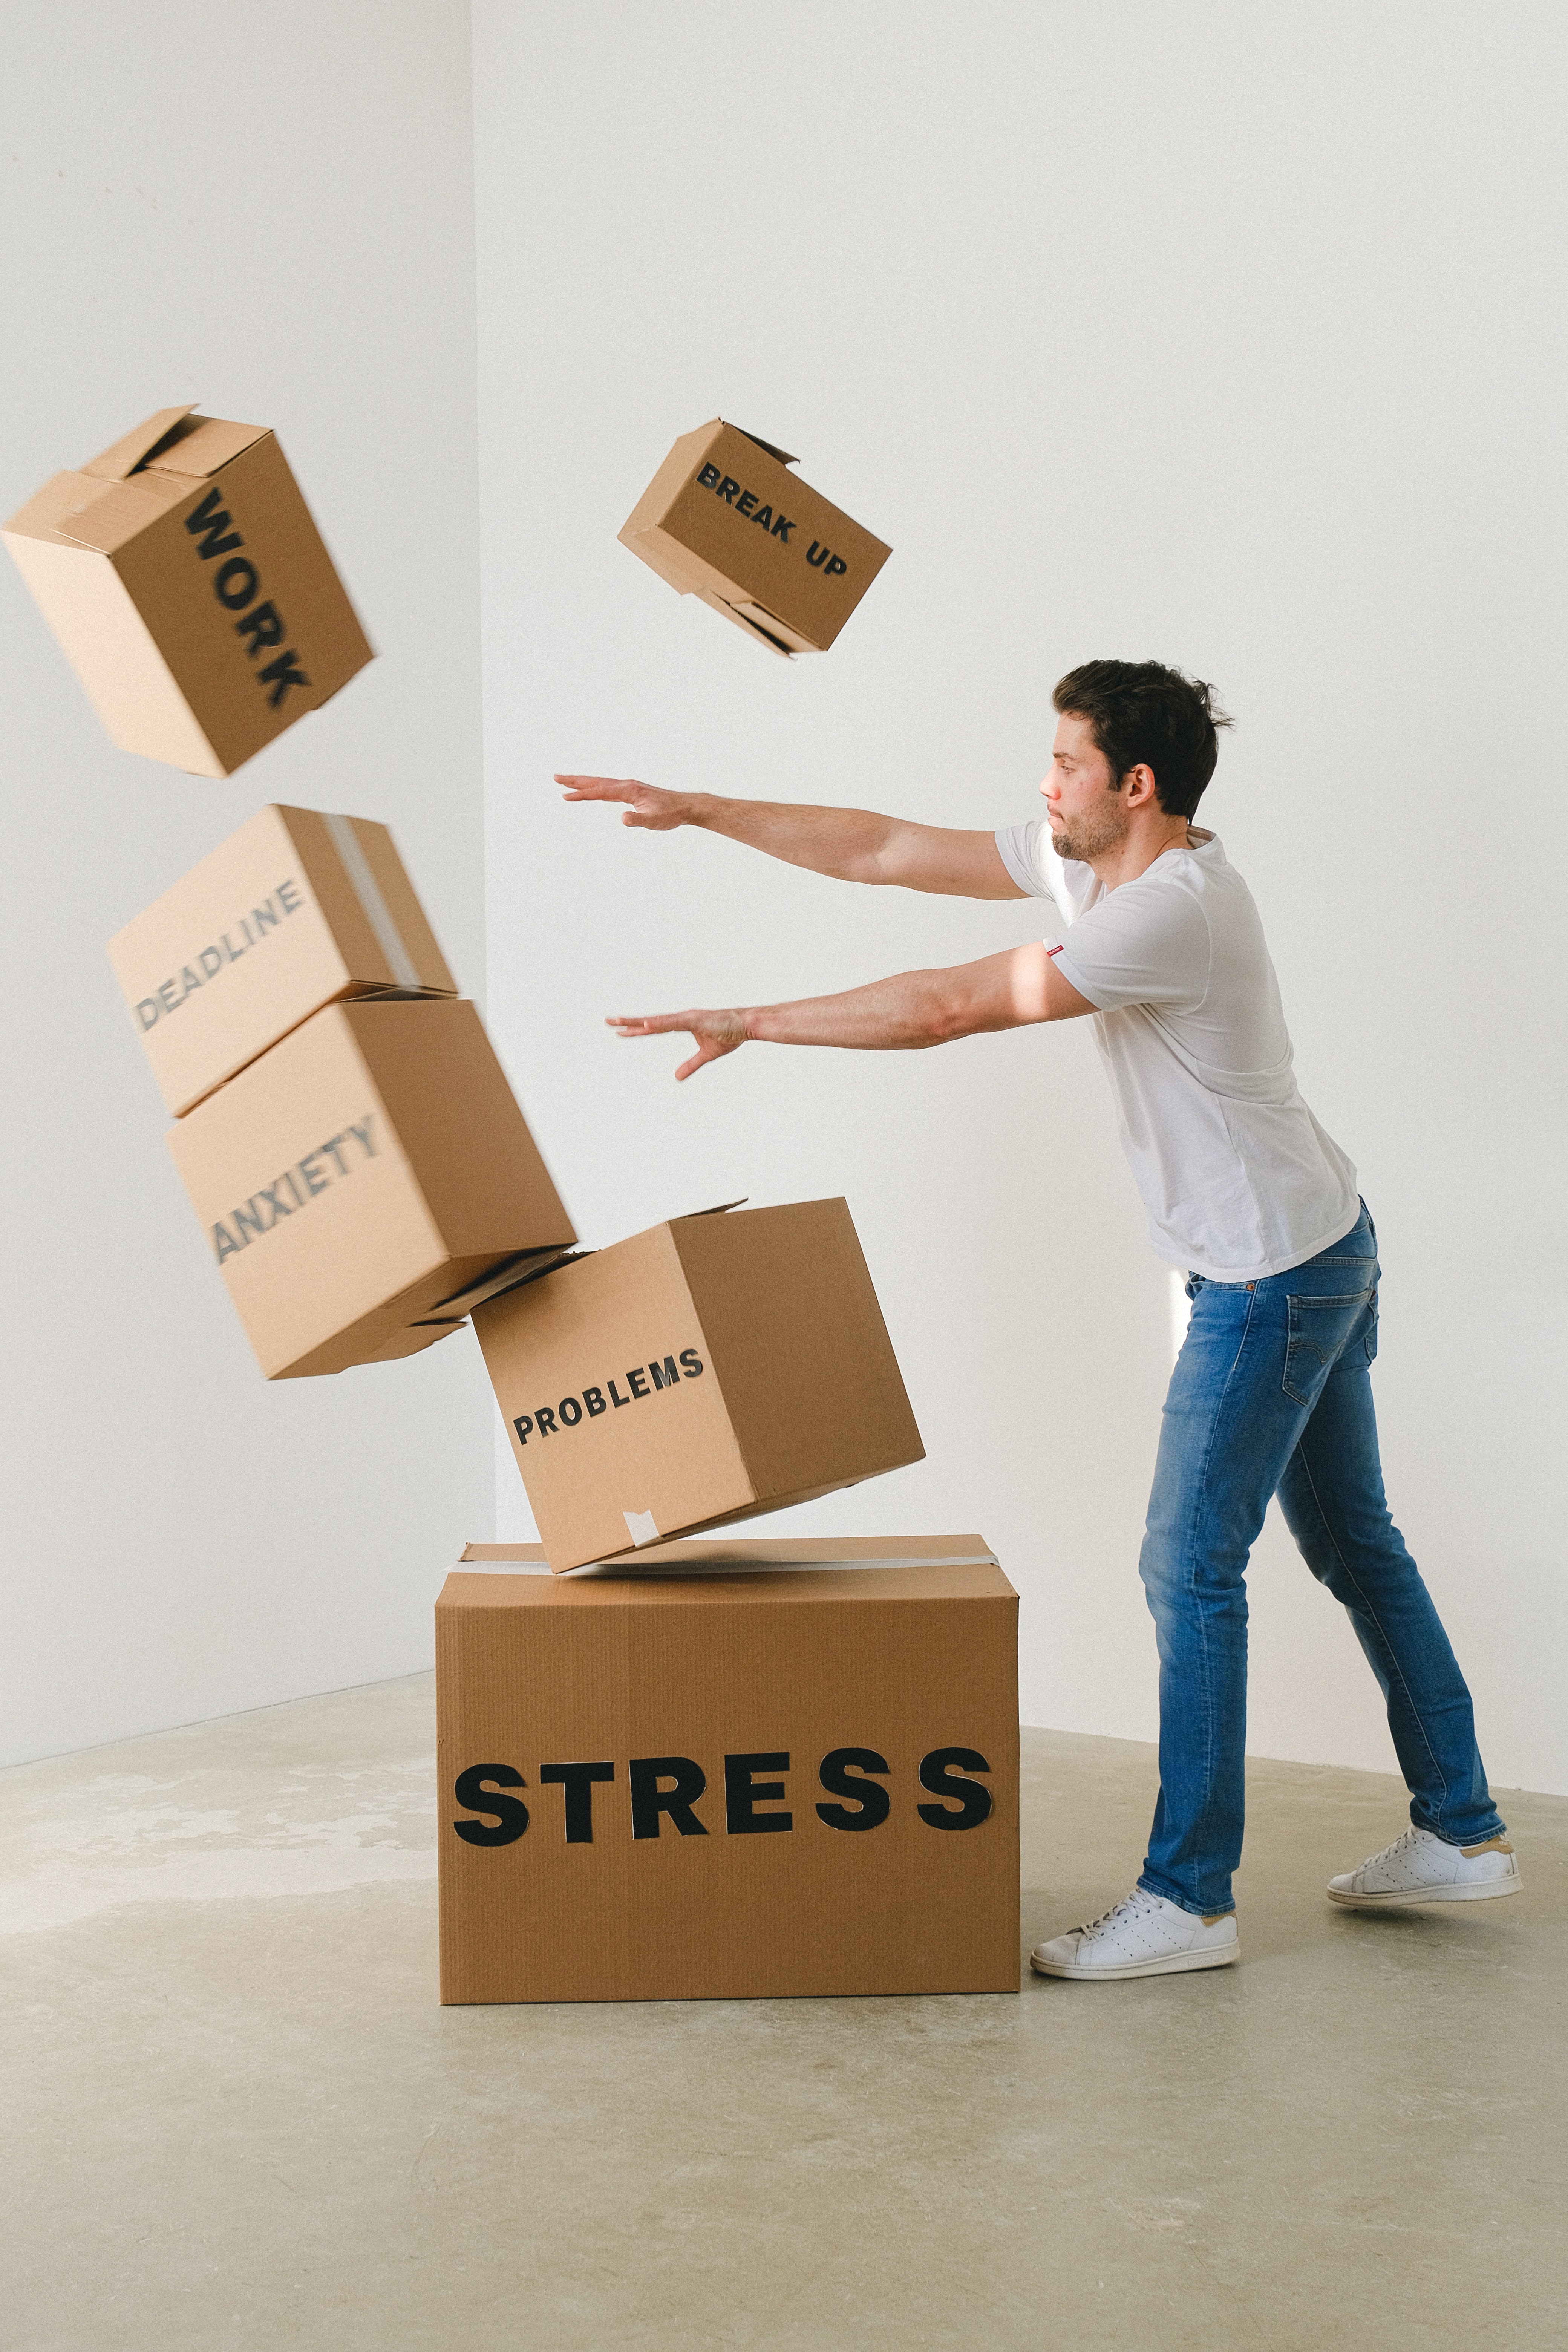 Cajas etiquetadas con estrés, trabajo y otras cosas que pueden causar ansiedad al ser derribadas por un hombre